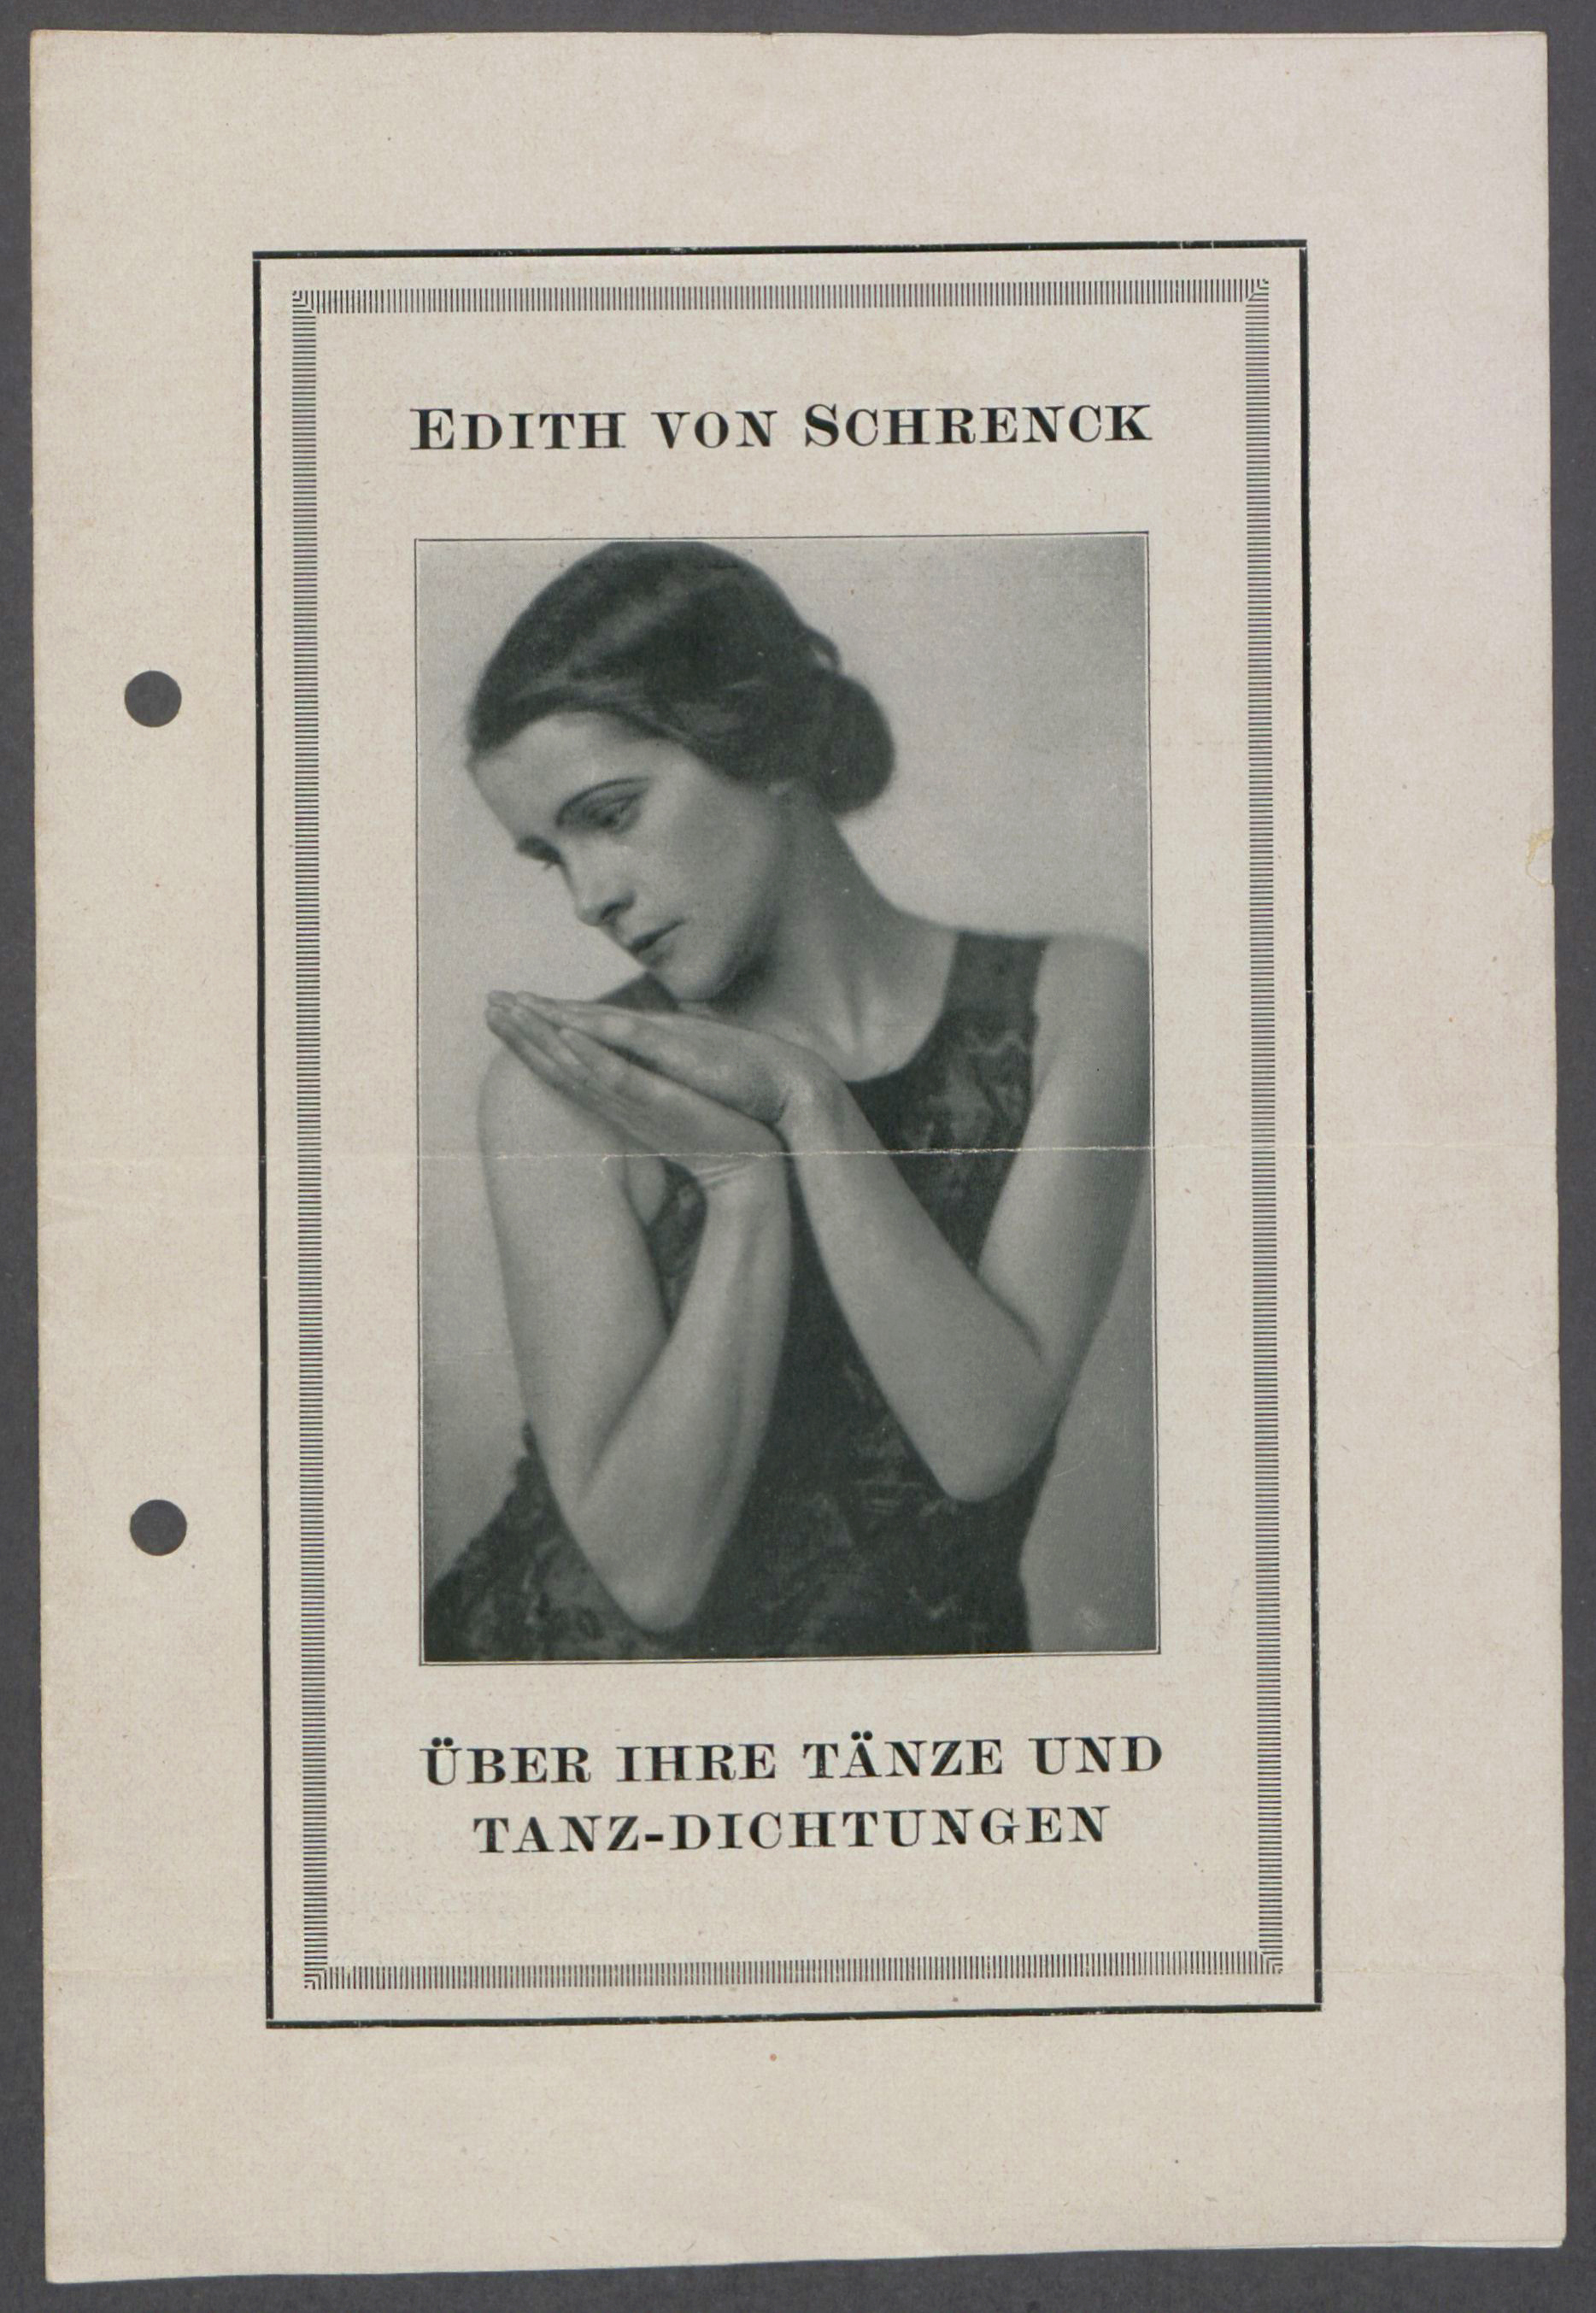 Broschüre "Edith Schrenck. Über ihre Tänze und Tanz-Dichtungen" | Brochure "Edith Schrenck. About her dances and dance poems" | src Georg Kolbe Museum